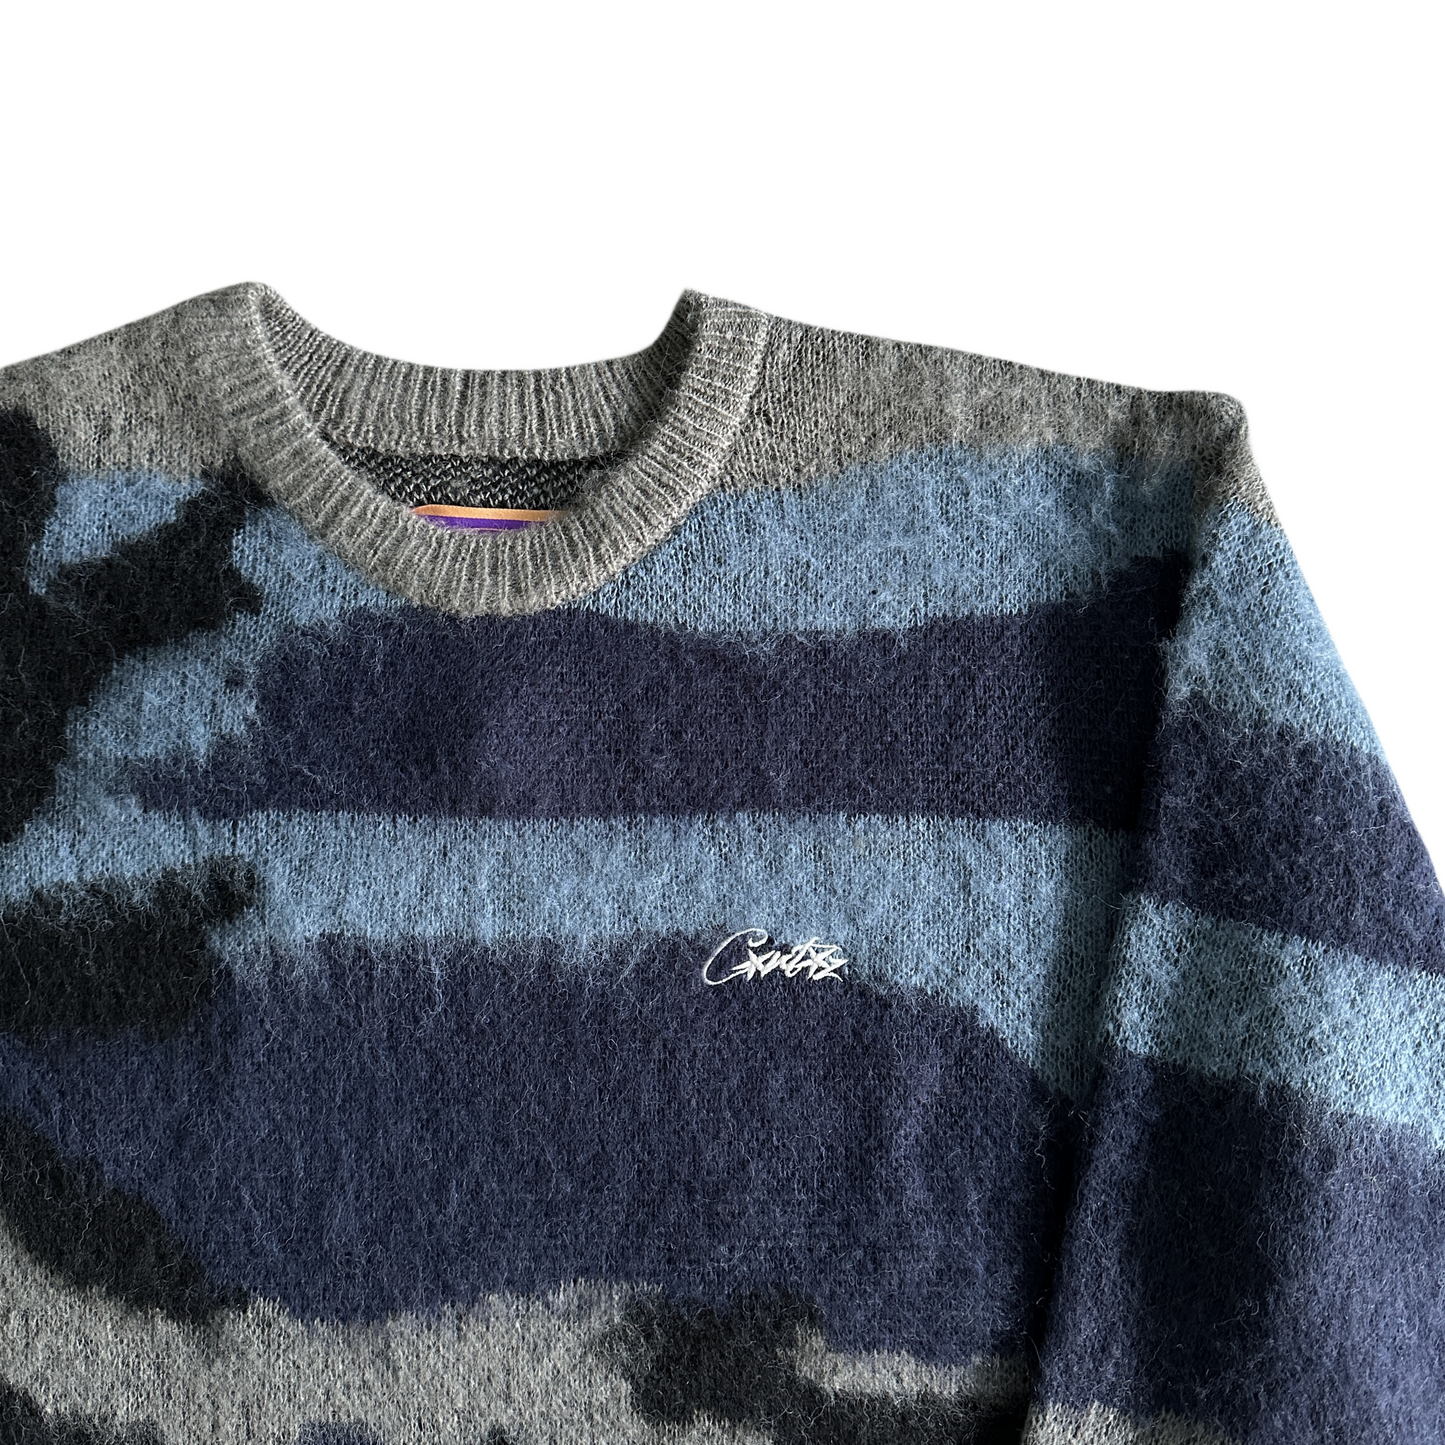 Corteiz Mohair Kmit Camo Knitted Jumper Sweater -Deep Ocean